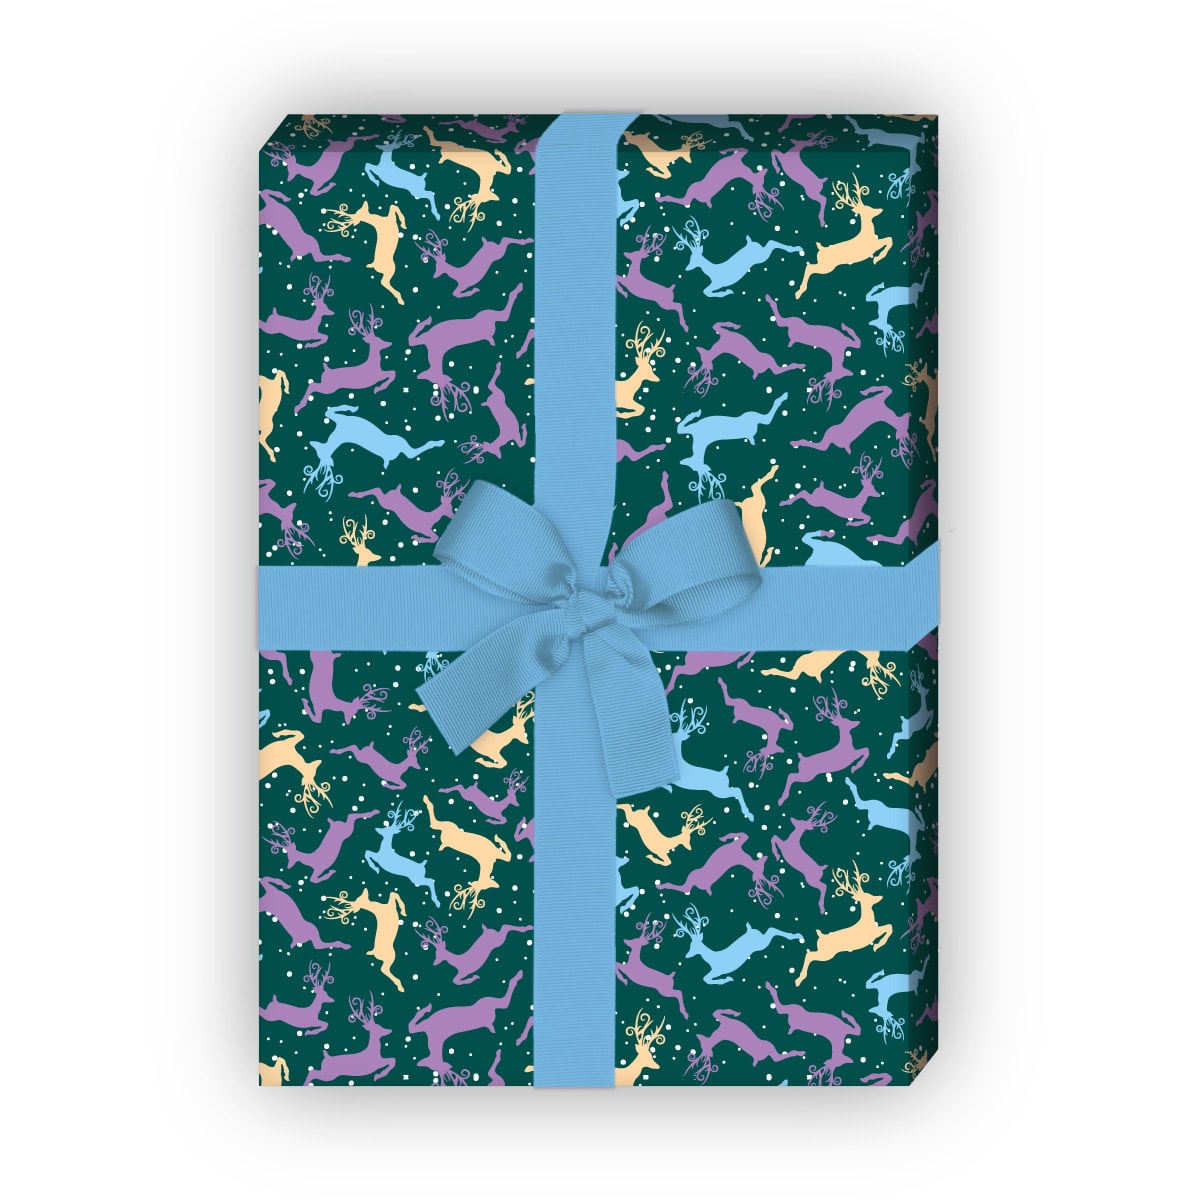 zum Weihnachtsgeschenk einpacken: Weihnachts Geschenkpapier mit buntem Hirsch Mosaik, grün, jetzt online kaufen